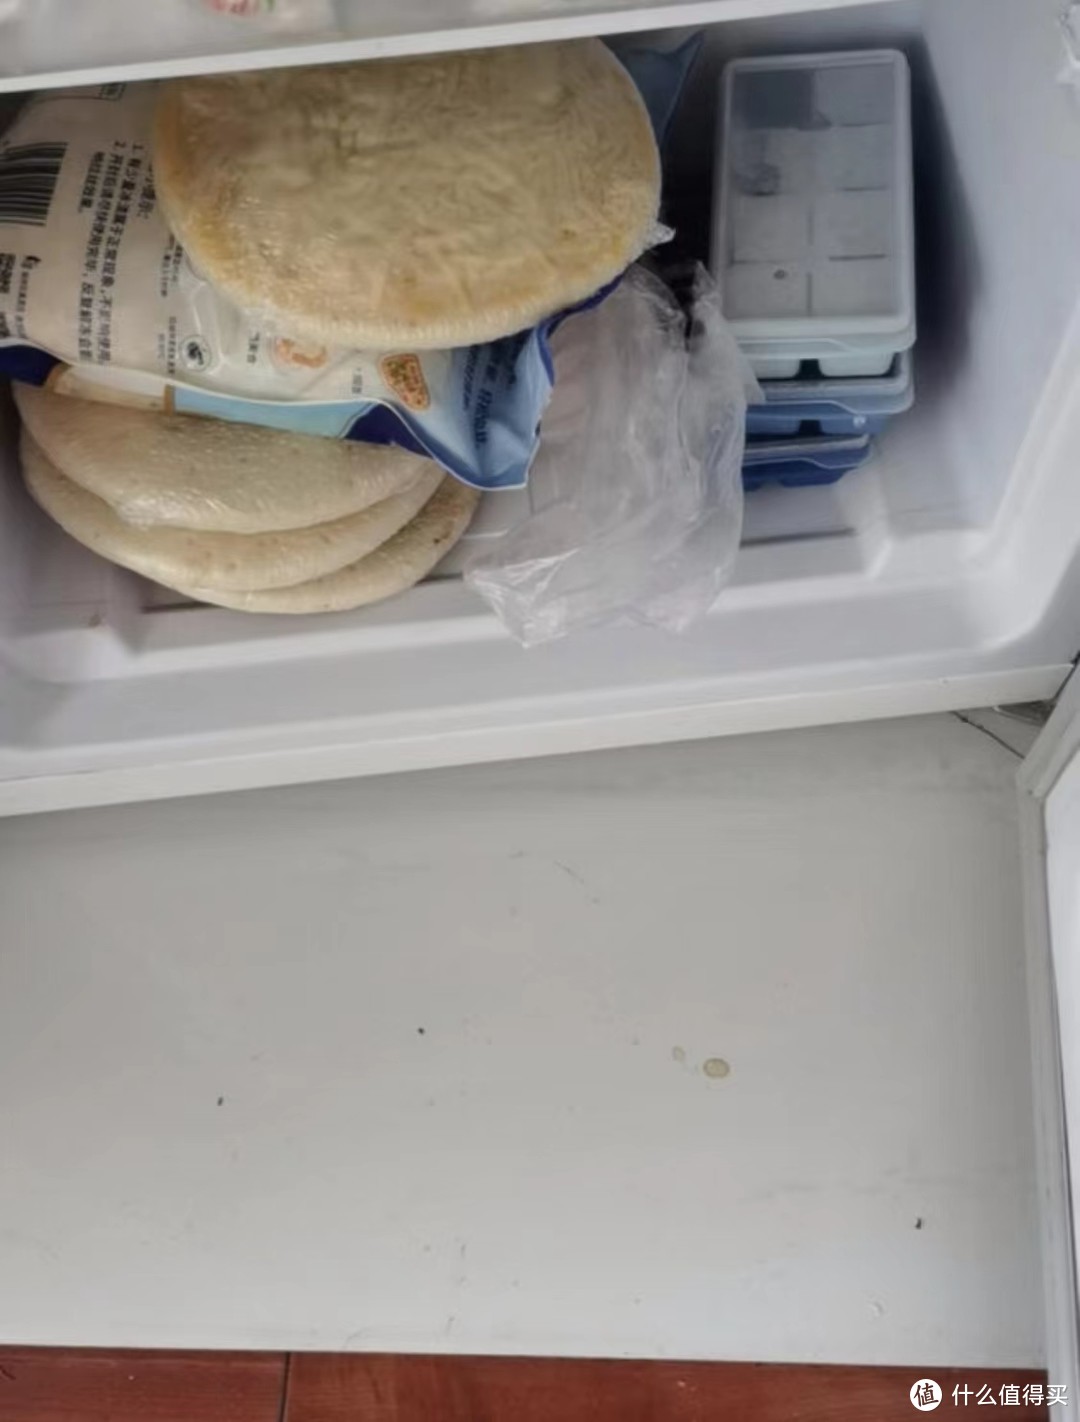 定期清理维护冰箱更健康